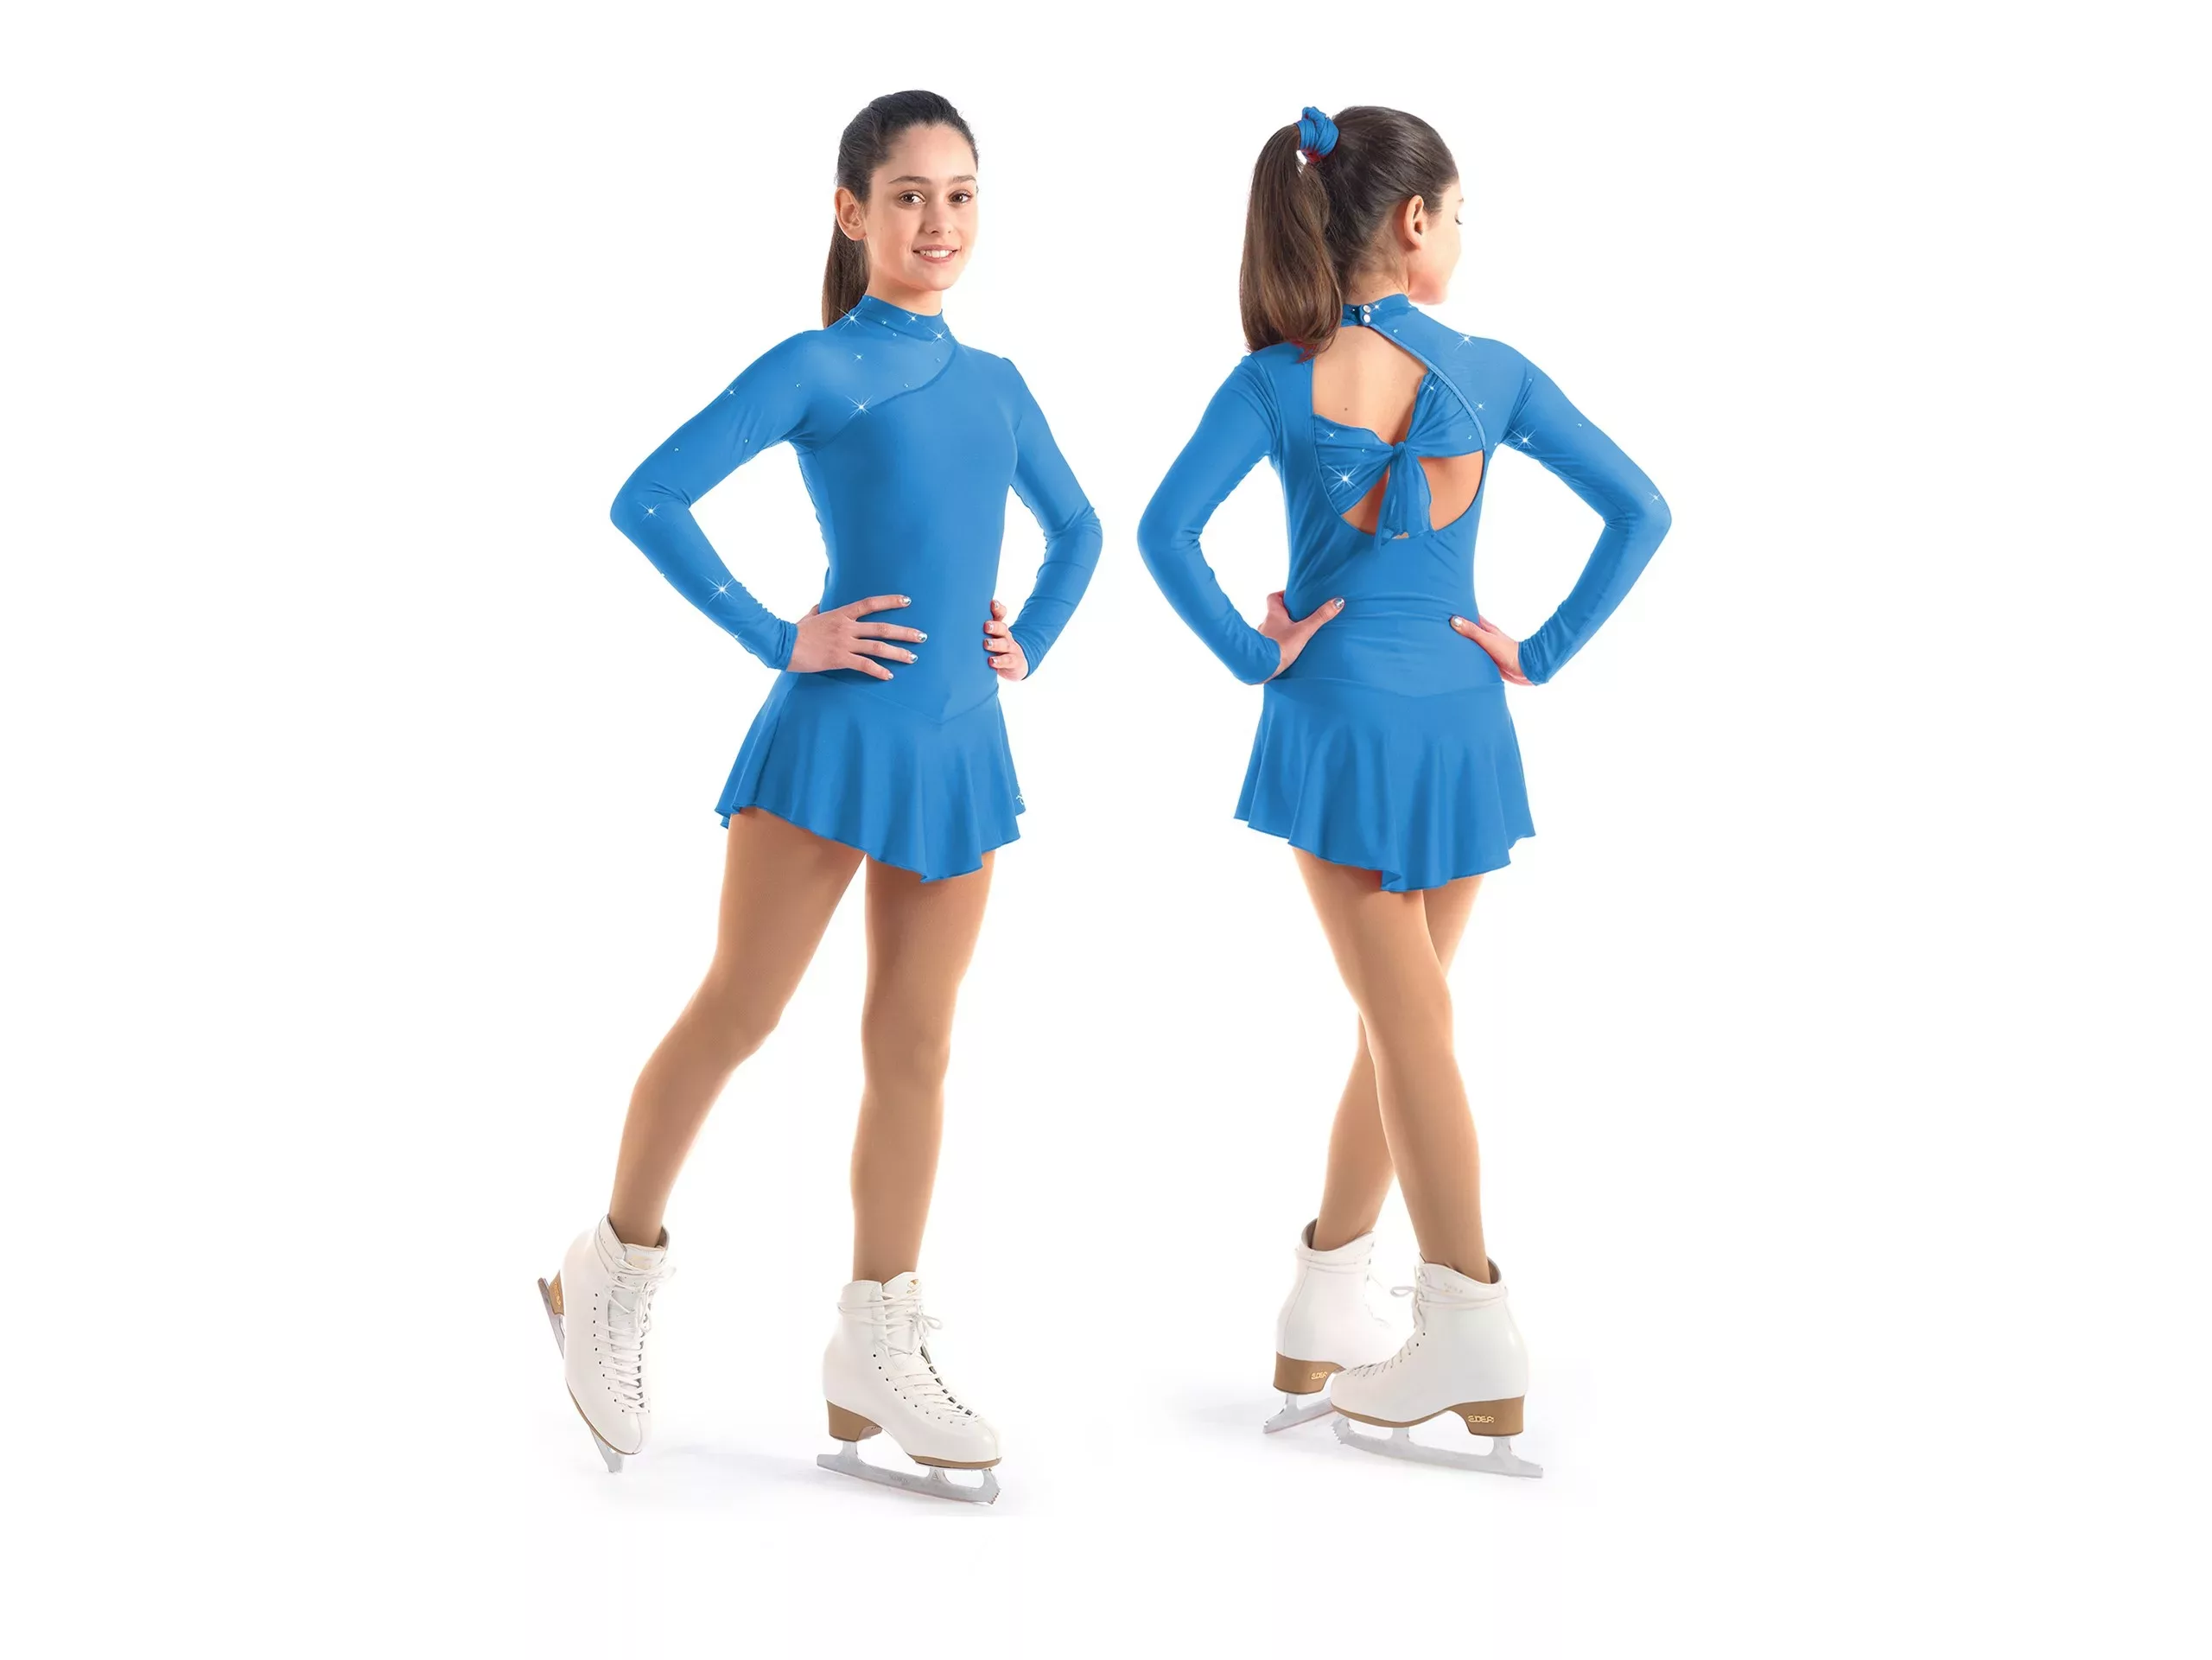 Sagester Eiskunstlauf-Kleiderstil: 137, Bay Blue Kleider